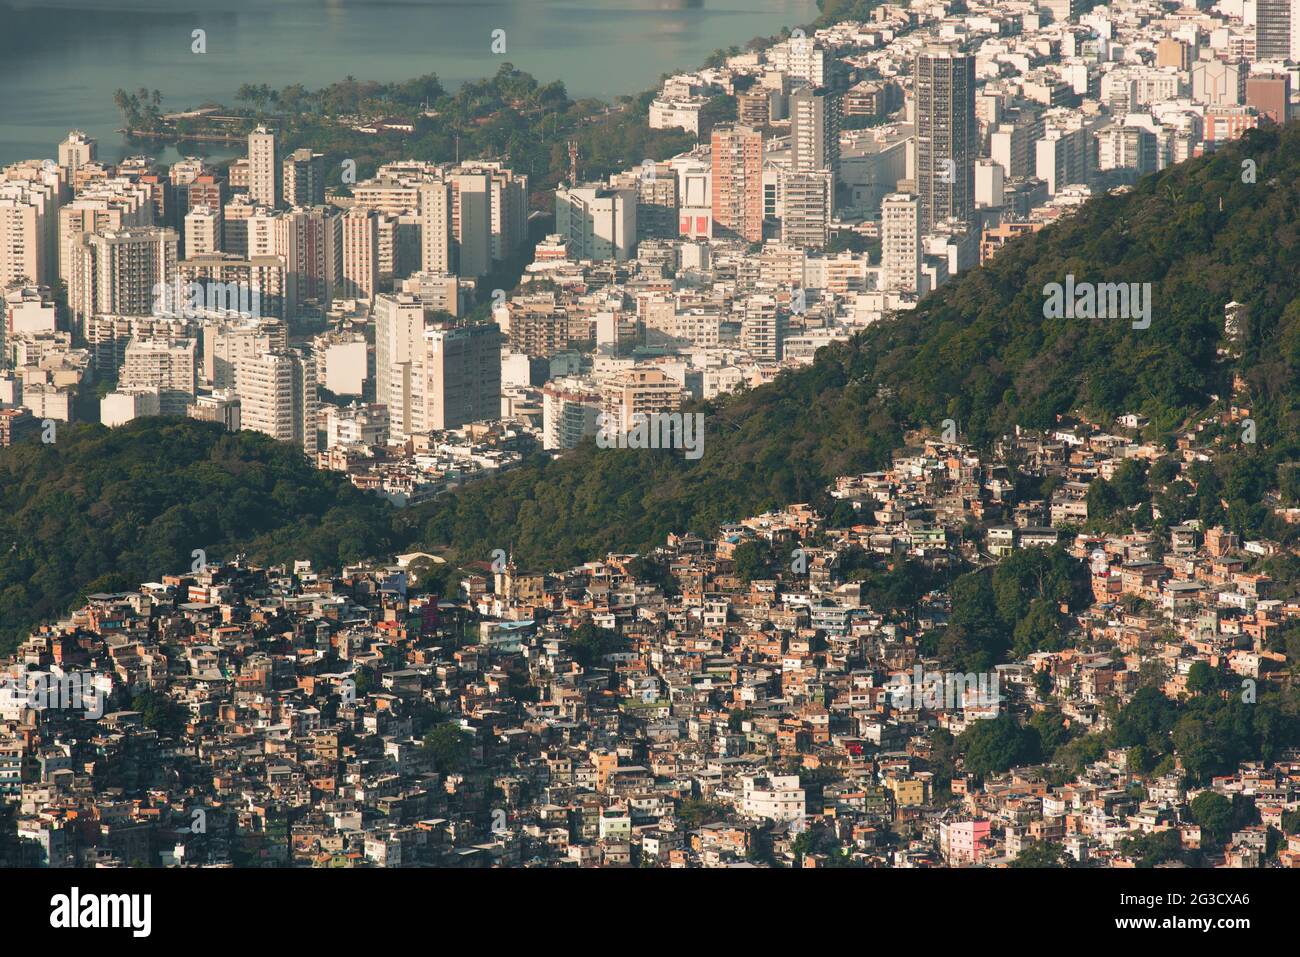 La plus grande Favela Rocinha brésilienne sur la colline et Leblon quartier derrière, contraste entre riches et pauvres, à Rio de Janeiro, Brésil Banque D'Images